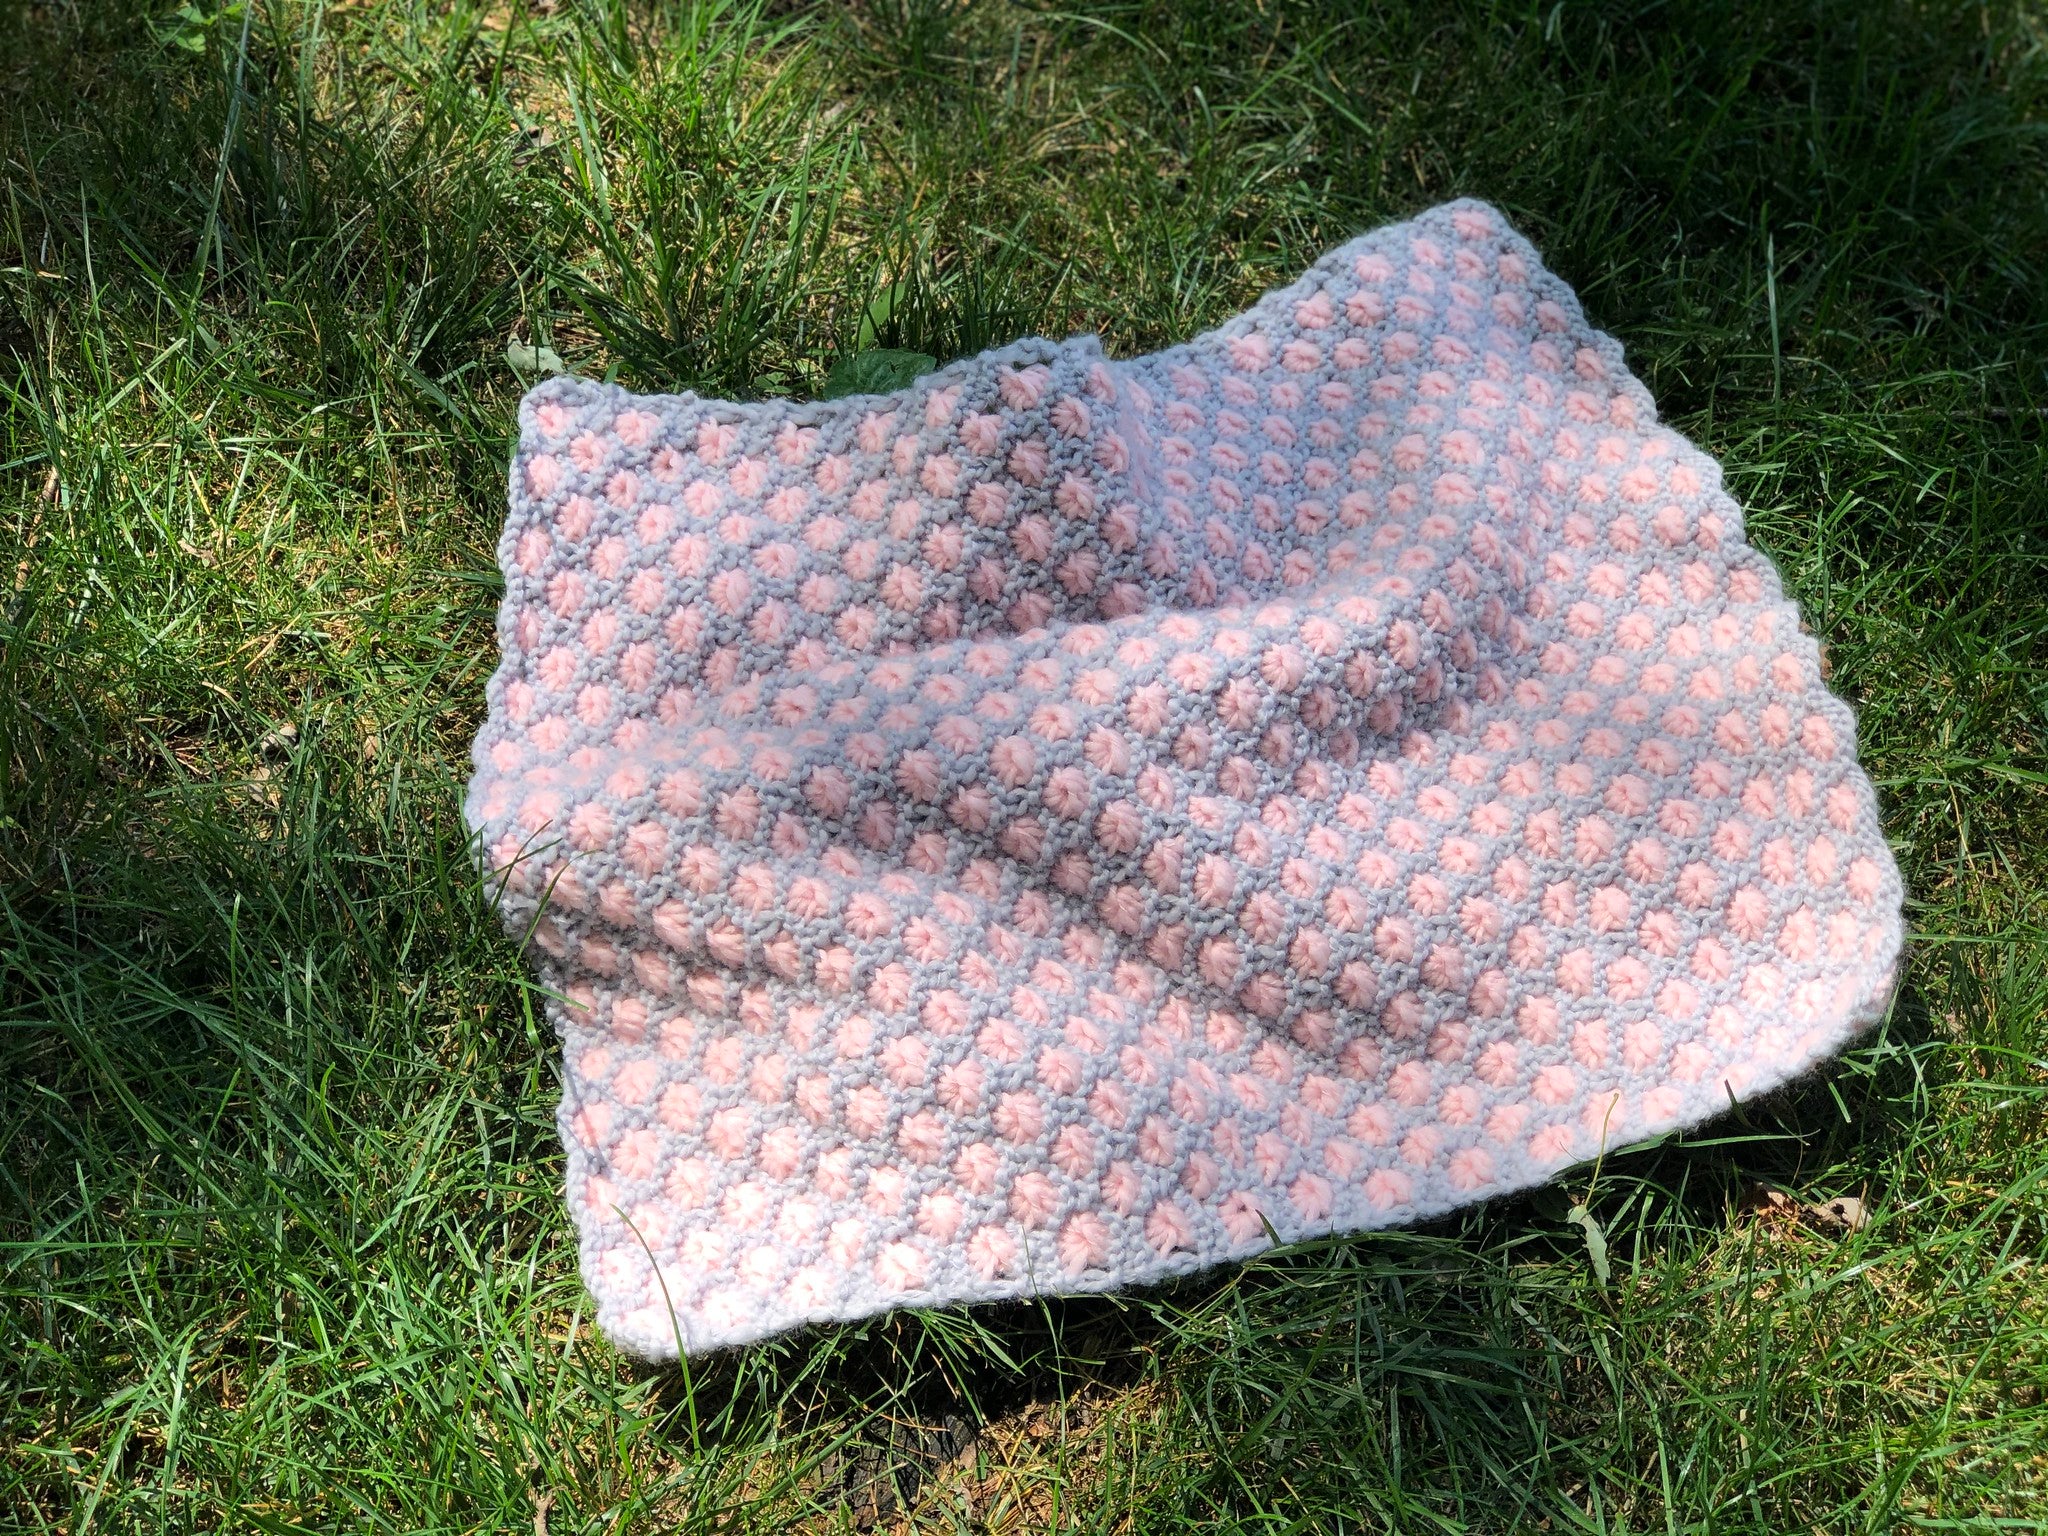 DIY Kit - Aster Flower Baby Blanket - Dream (Merino Worsted)